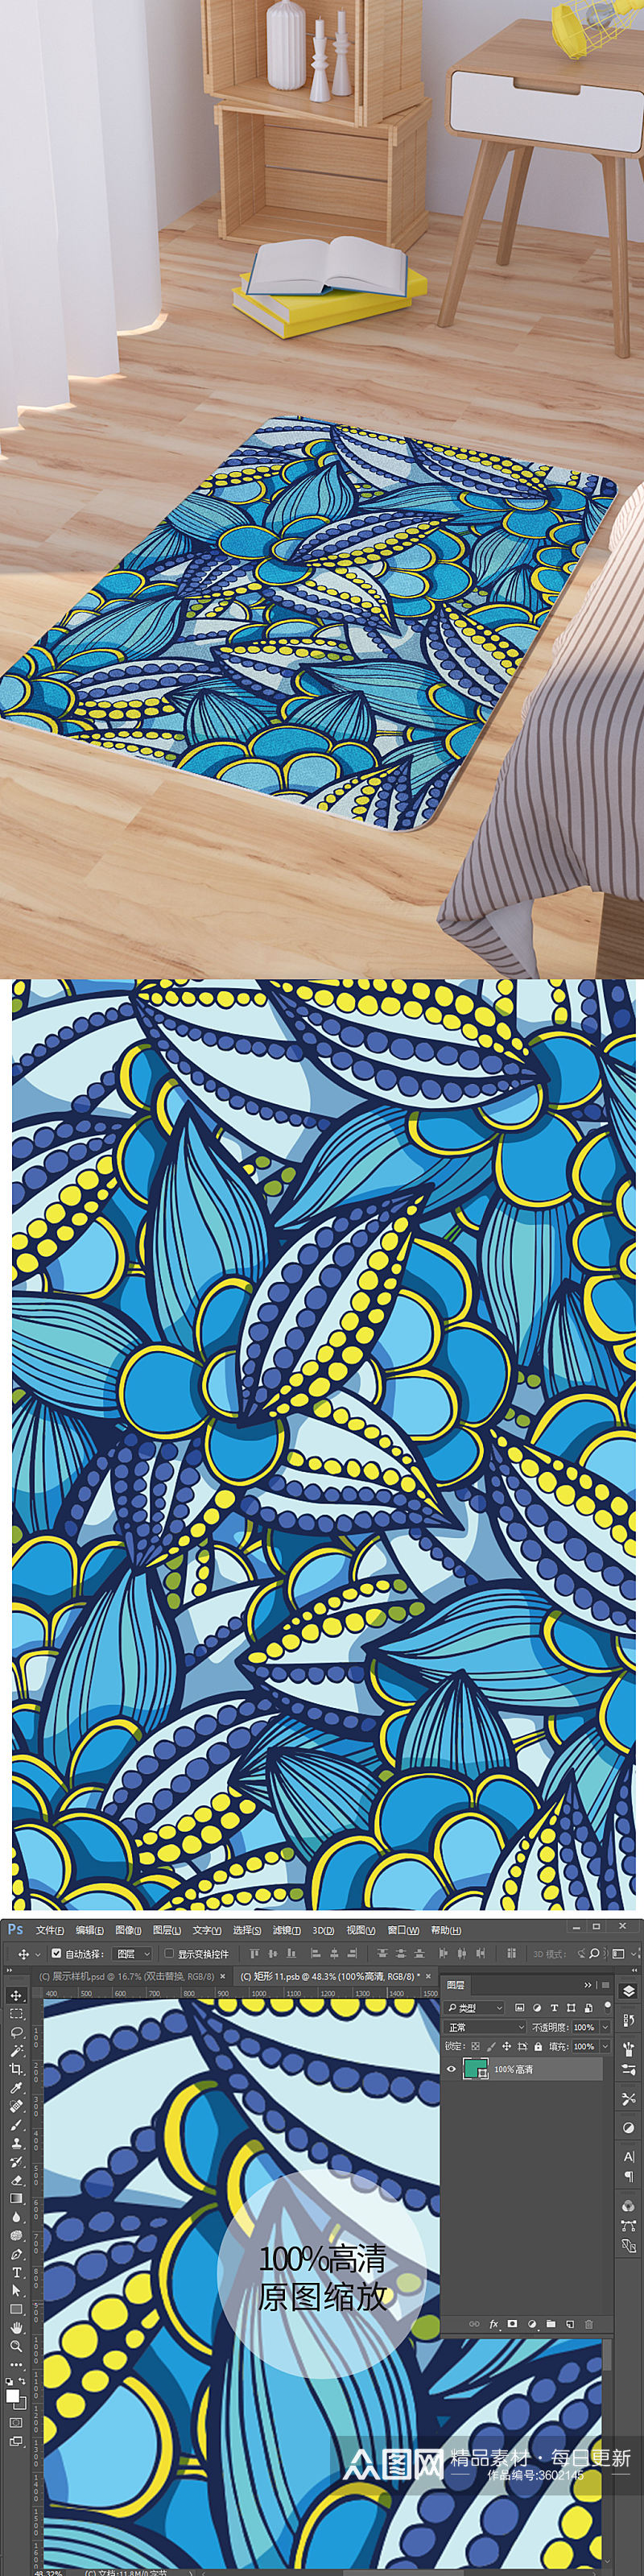 蓝色矢量手绘抽象花纹脚垫地毯图案素材